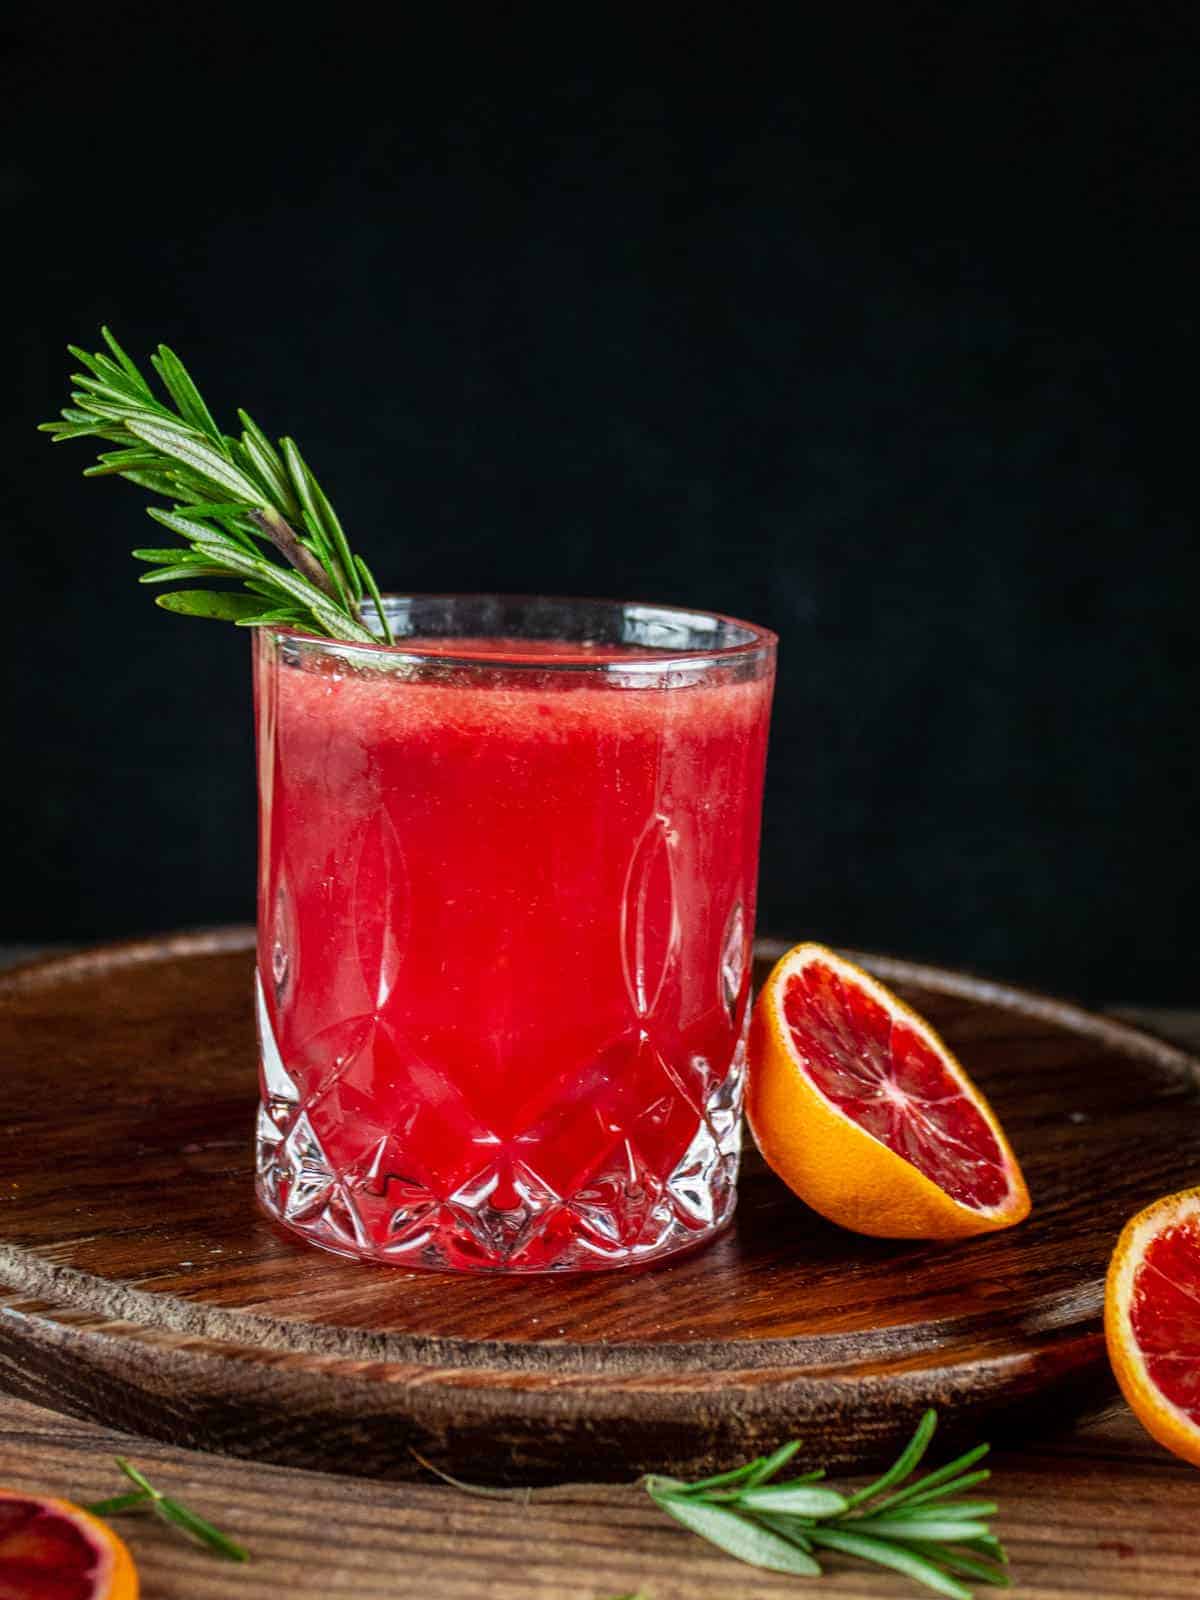 blood orange cocktail with fresh blood orange half